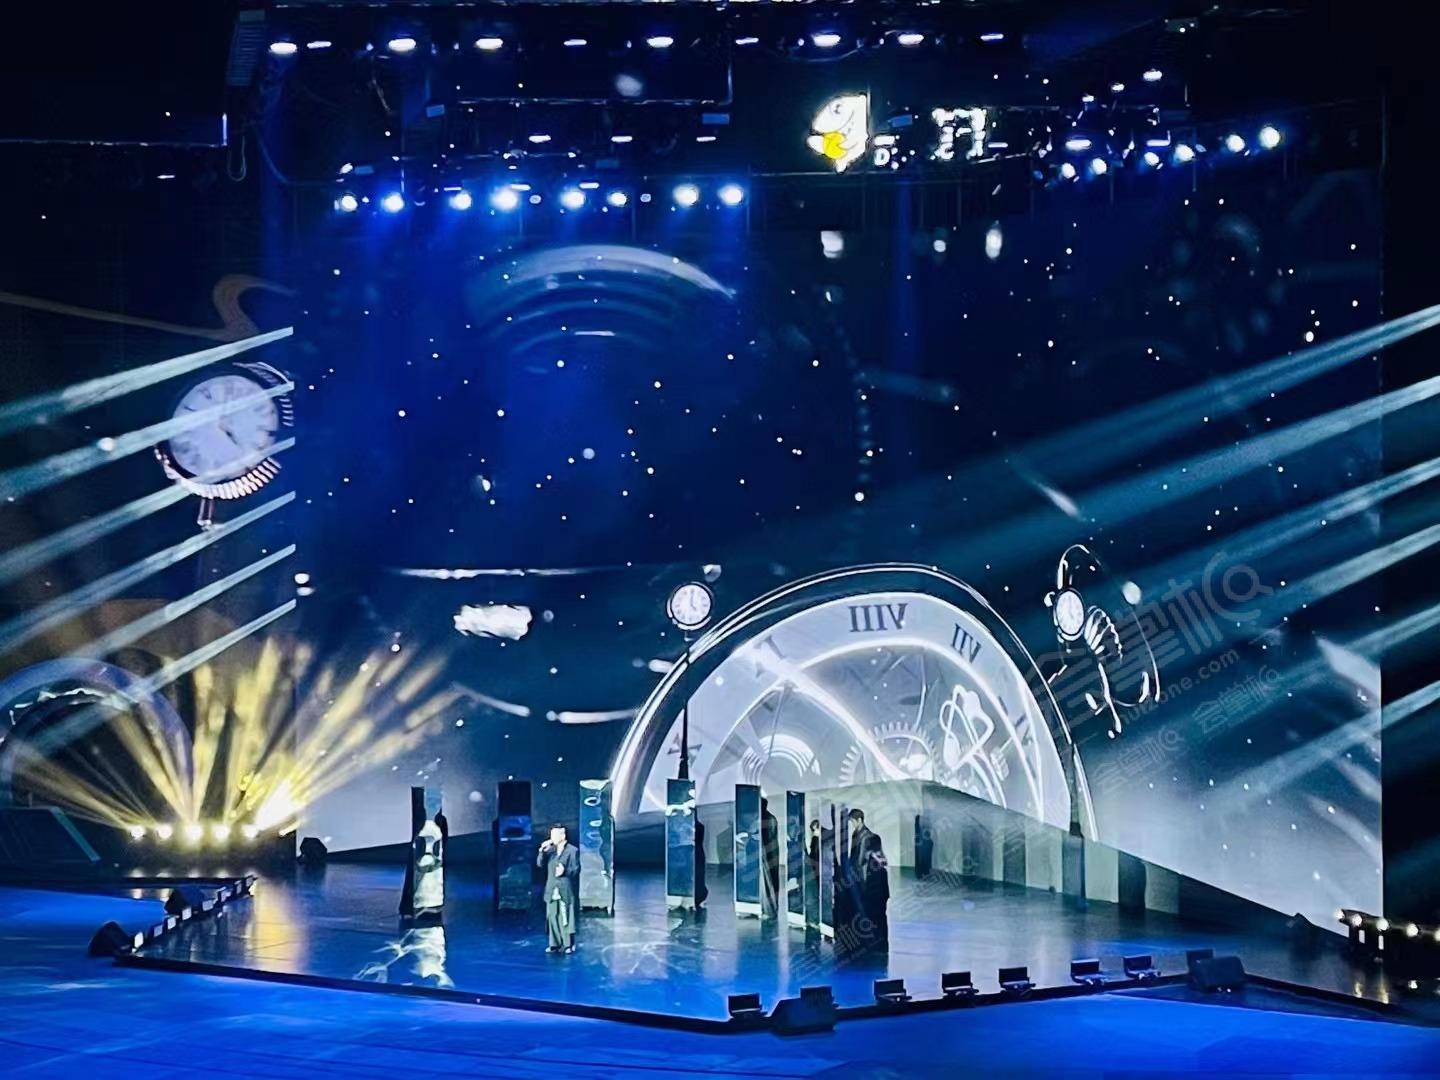 鱼乐盛典9周年斗鱼年度颁奖典礼在汉秀剧场盛大举办